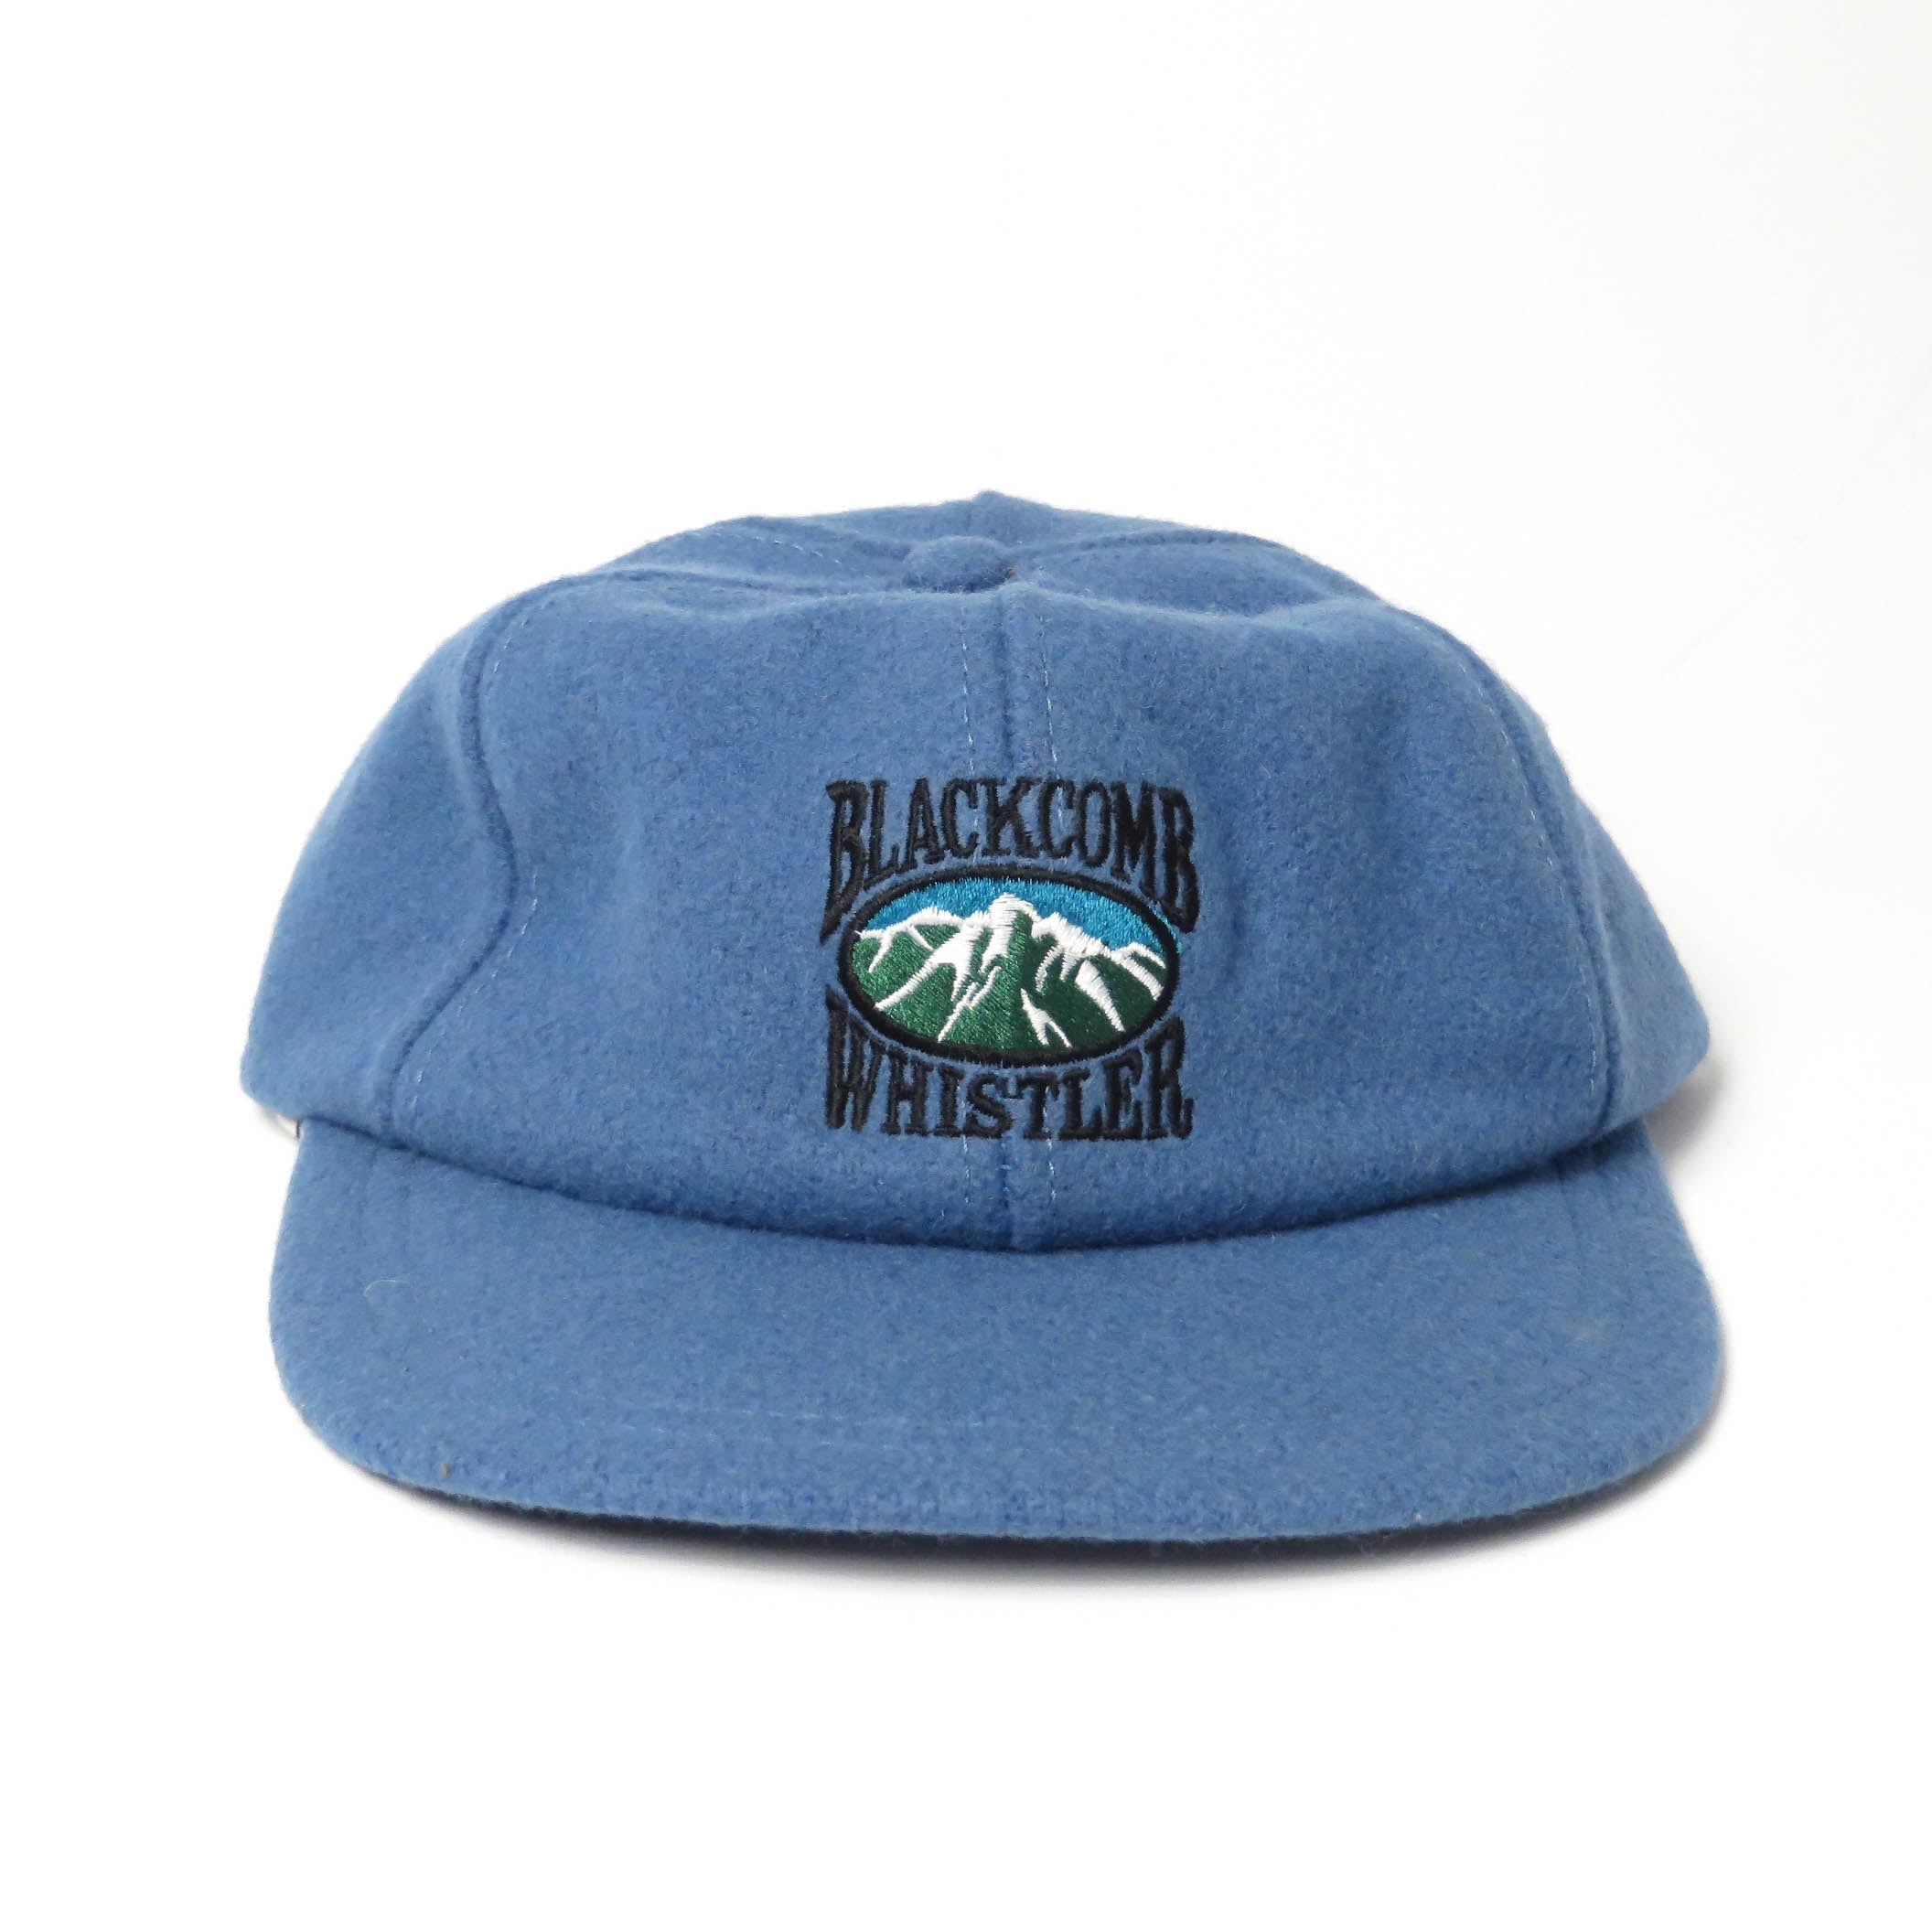 Vintage Whistler Blackbomb Flannel Strapback Hat